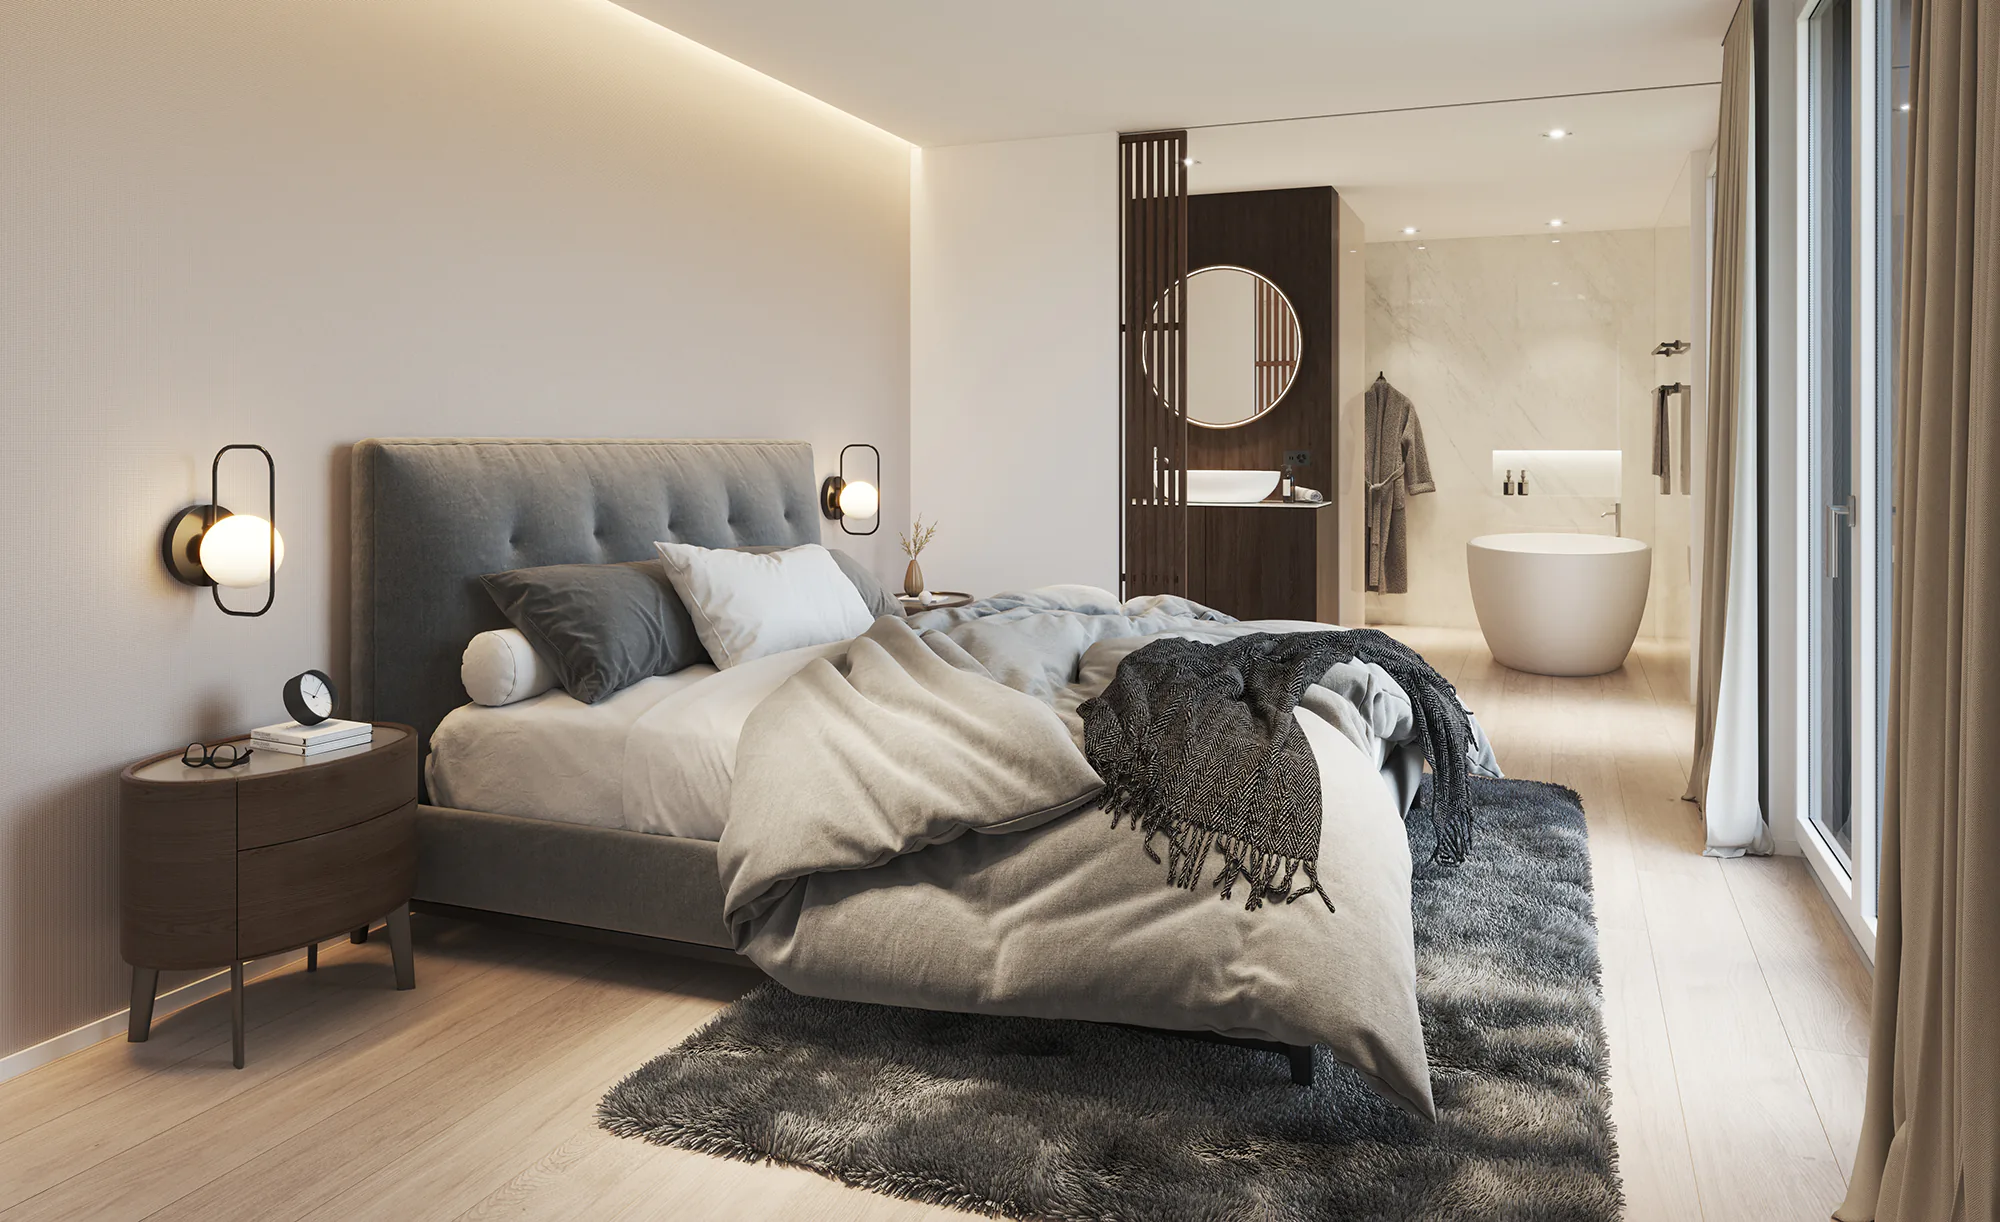 Innenvisualisierung eines Schlafzimmers mit eigenem Bad in einem Einfamilienhaus in Thun, Schweiz